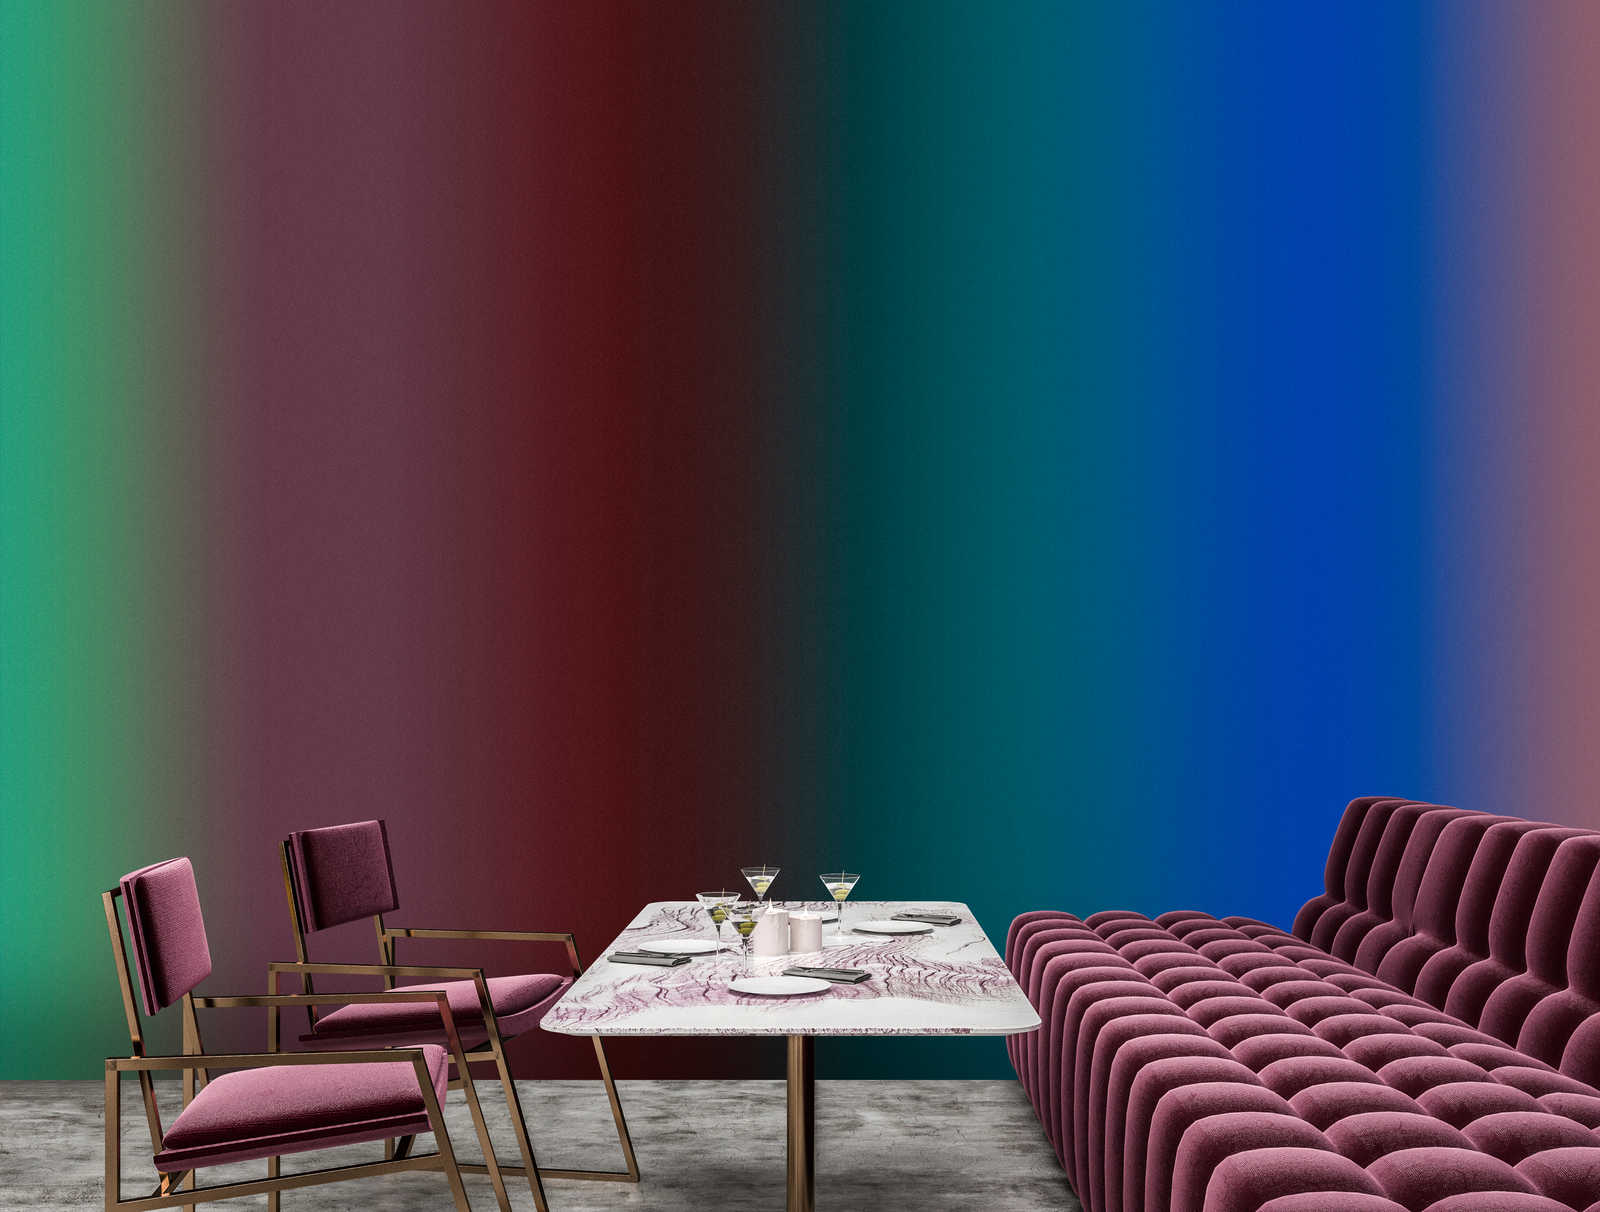             Over the Rainbow 2 - papel pintado fotográfico con degradado y diseño de rayas de colores
        